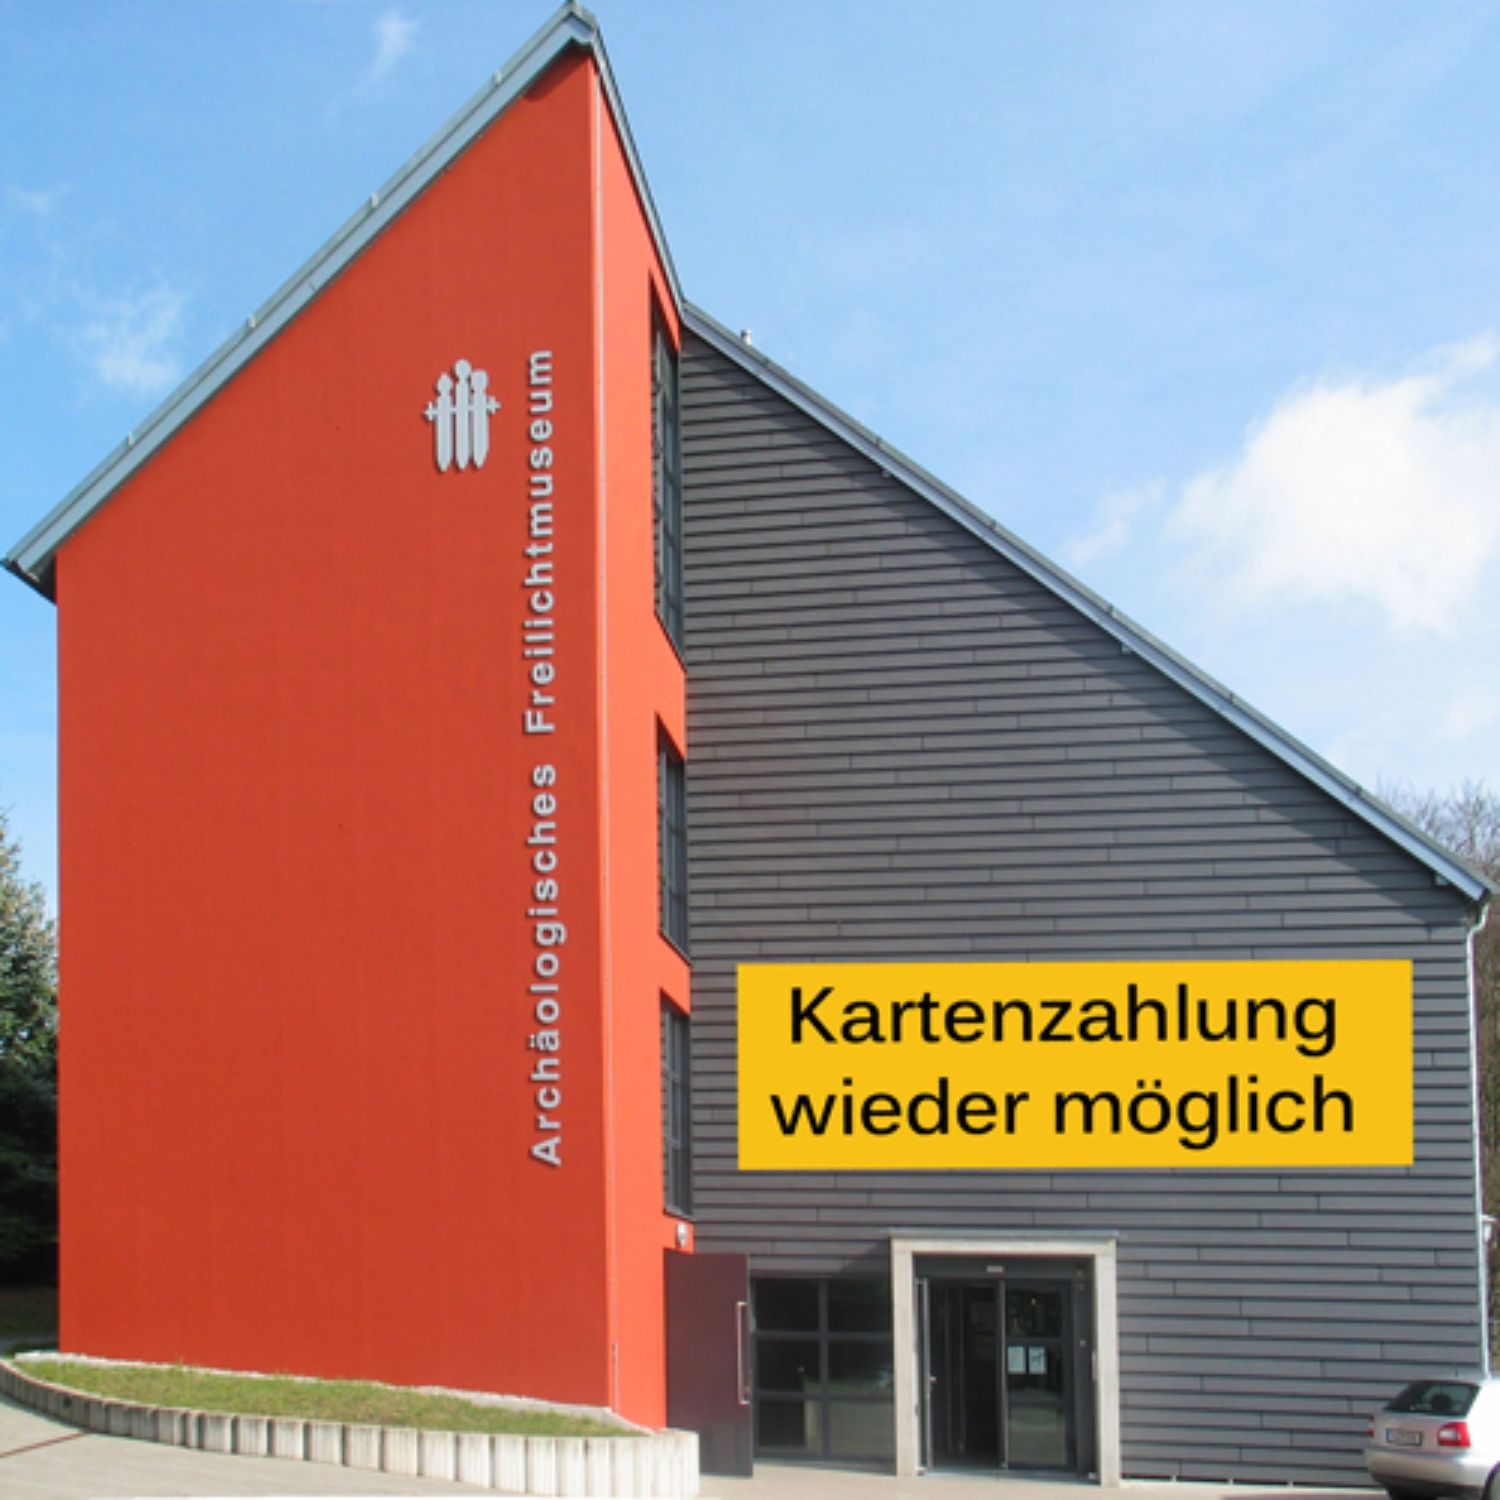 Außenansicht des Museumsgebäudes Groß Raden mit Schriftzug "Kartenzahlung wieder möglich"